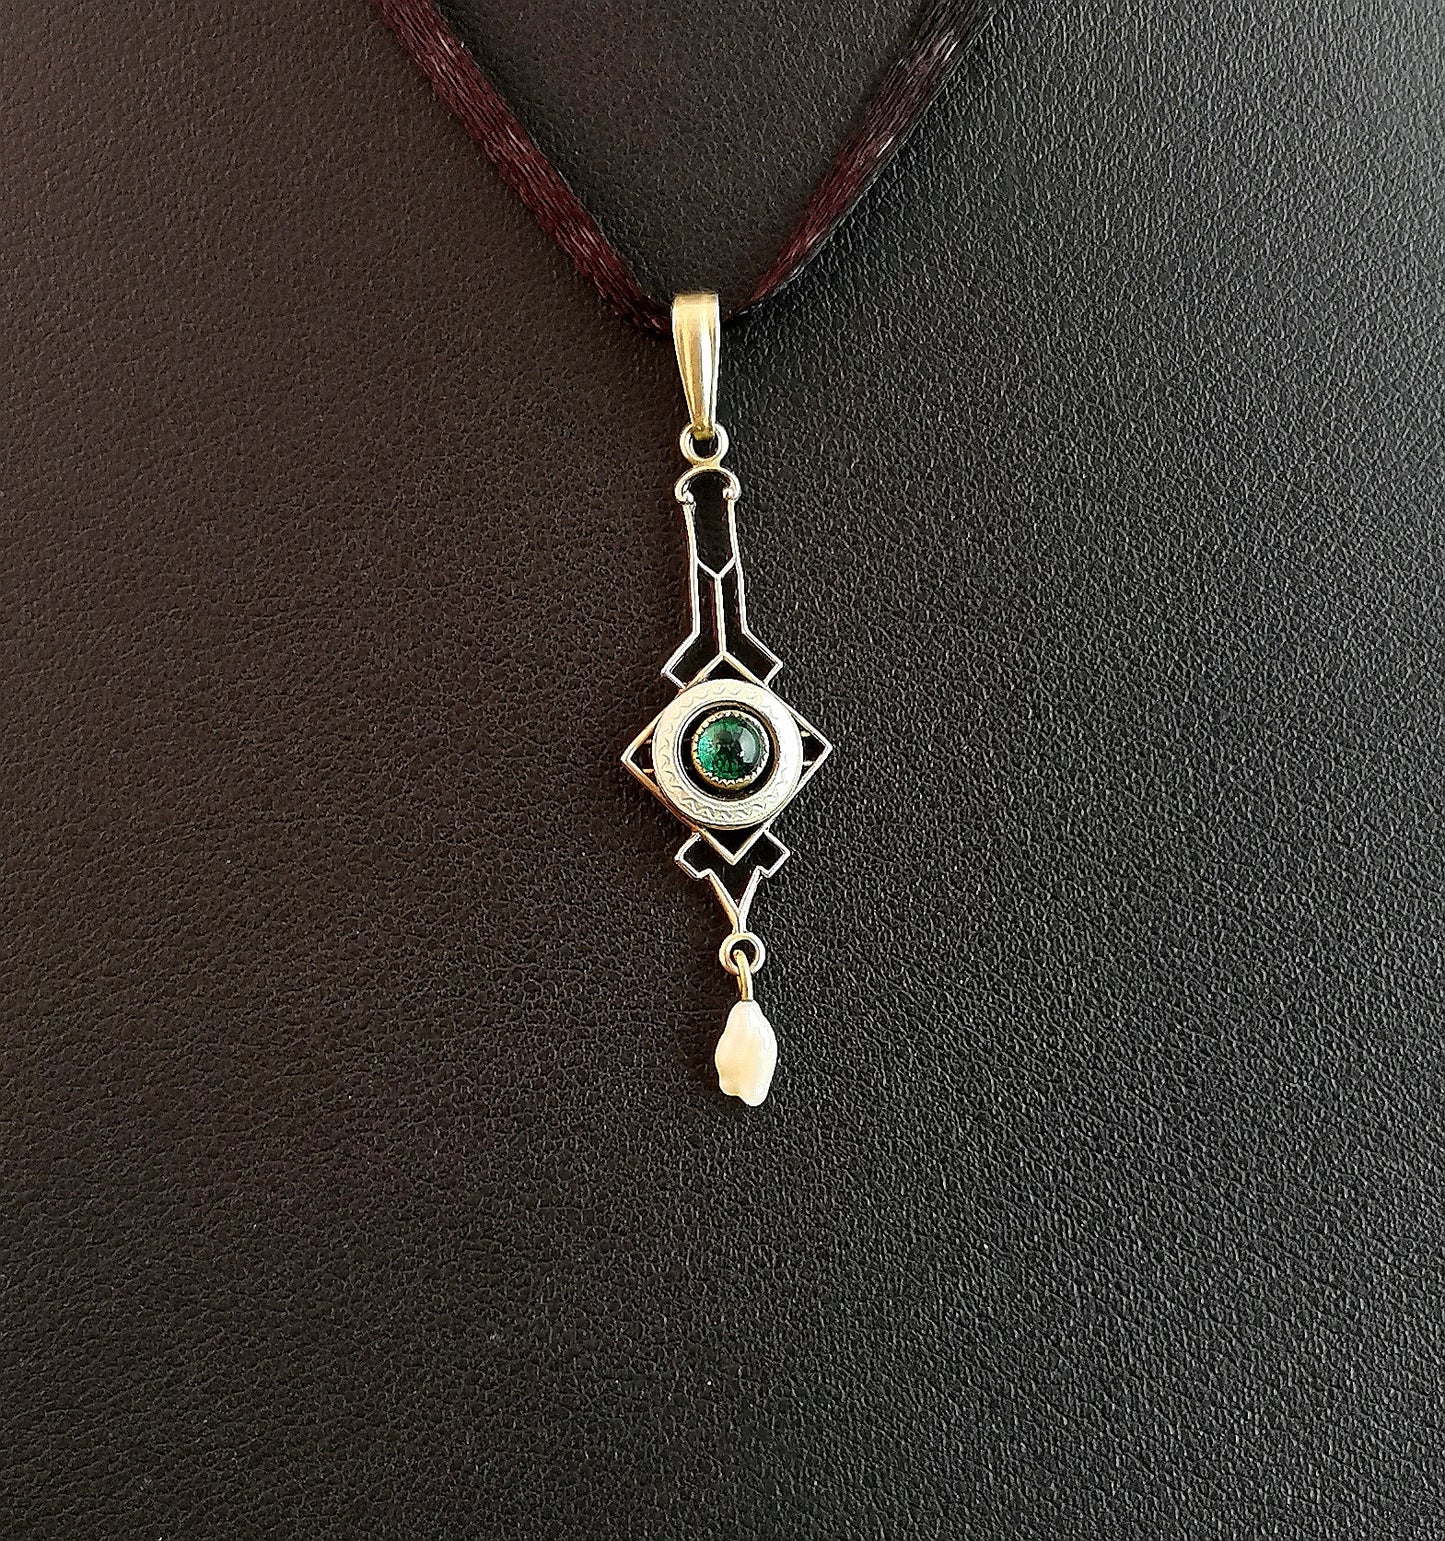 Antique Art Nouveau Emerald paste Drop pendant, Silver gilt, Guilloche enamel, Baroque pearl